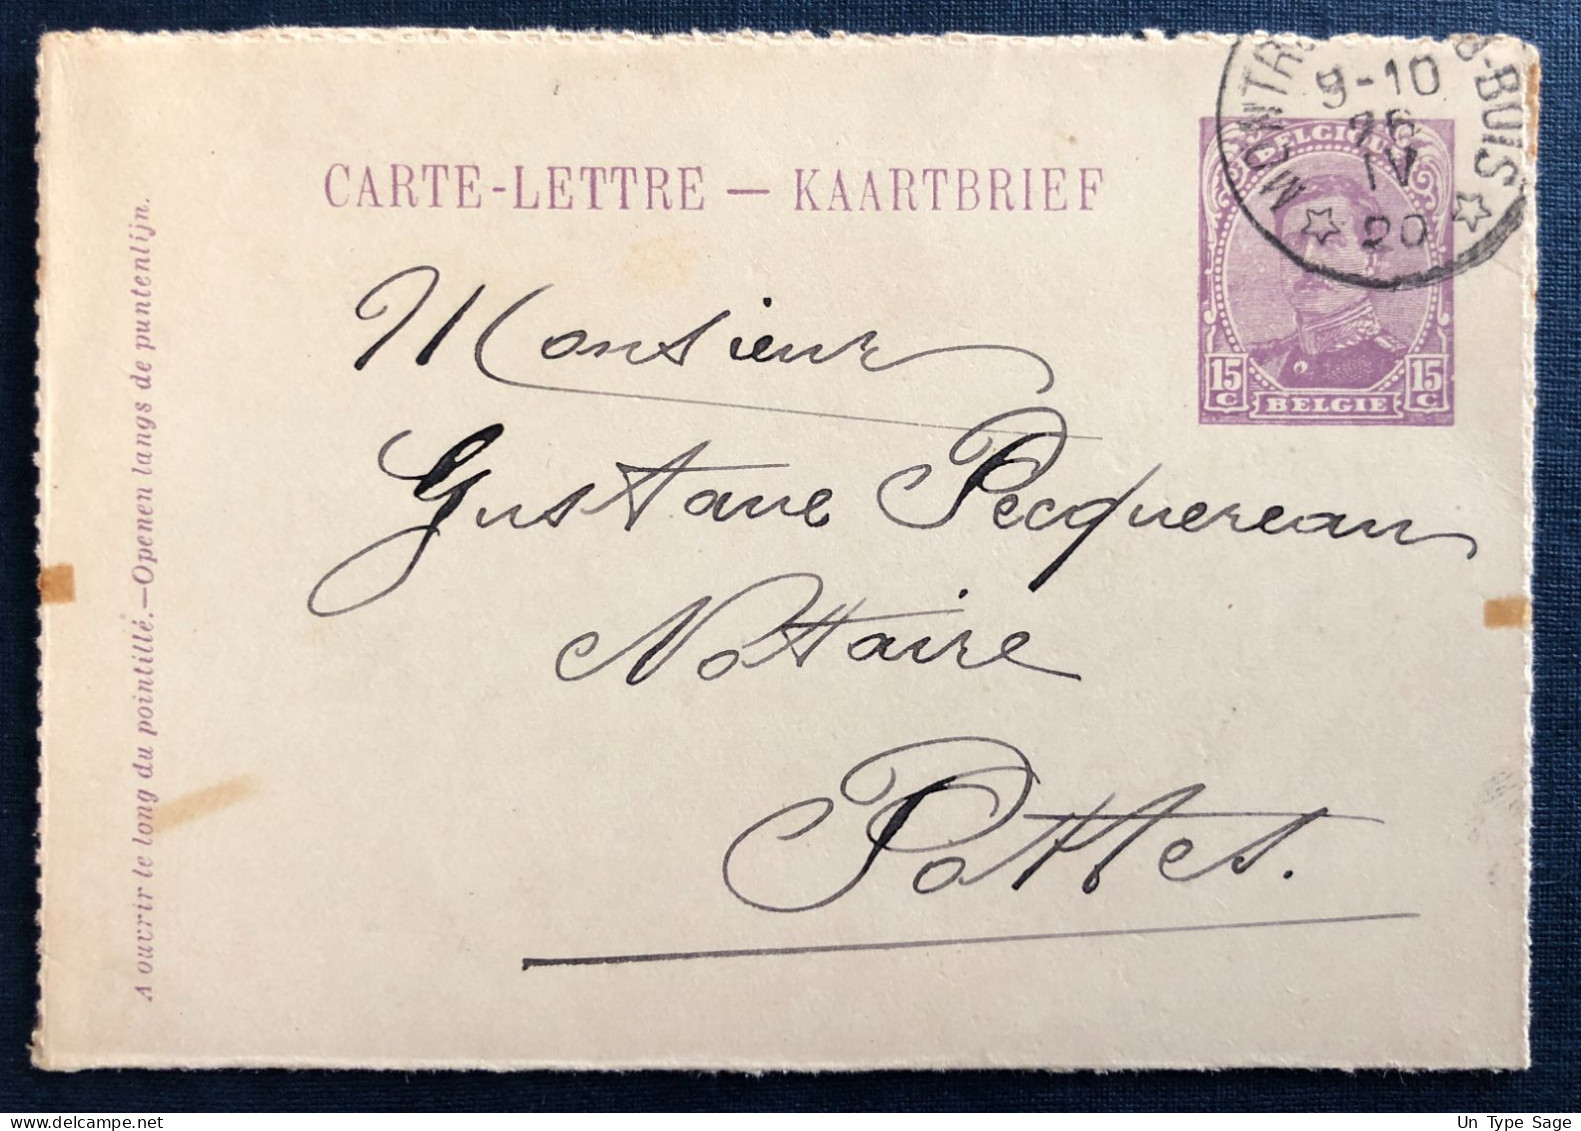 Belgique, Cachet Relais (étoile) Montrœul-au-Bois 26.IV.1920 Sur Entier Carte-lettre - (N769) - Postmarks With Stars